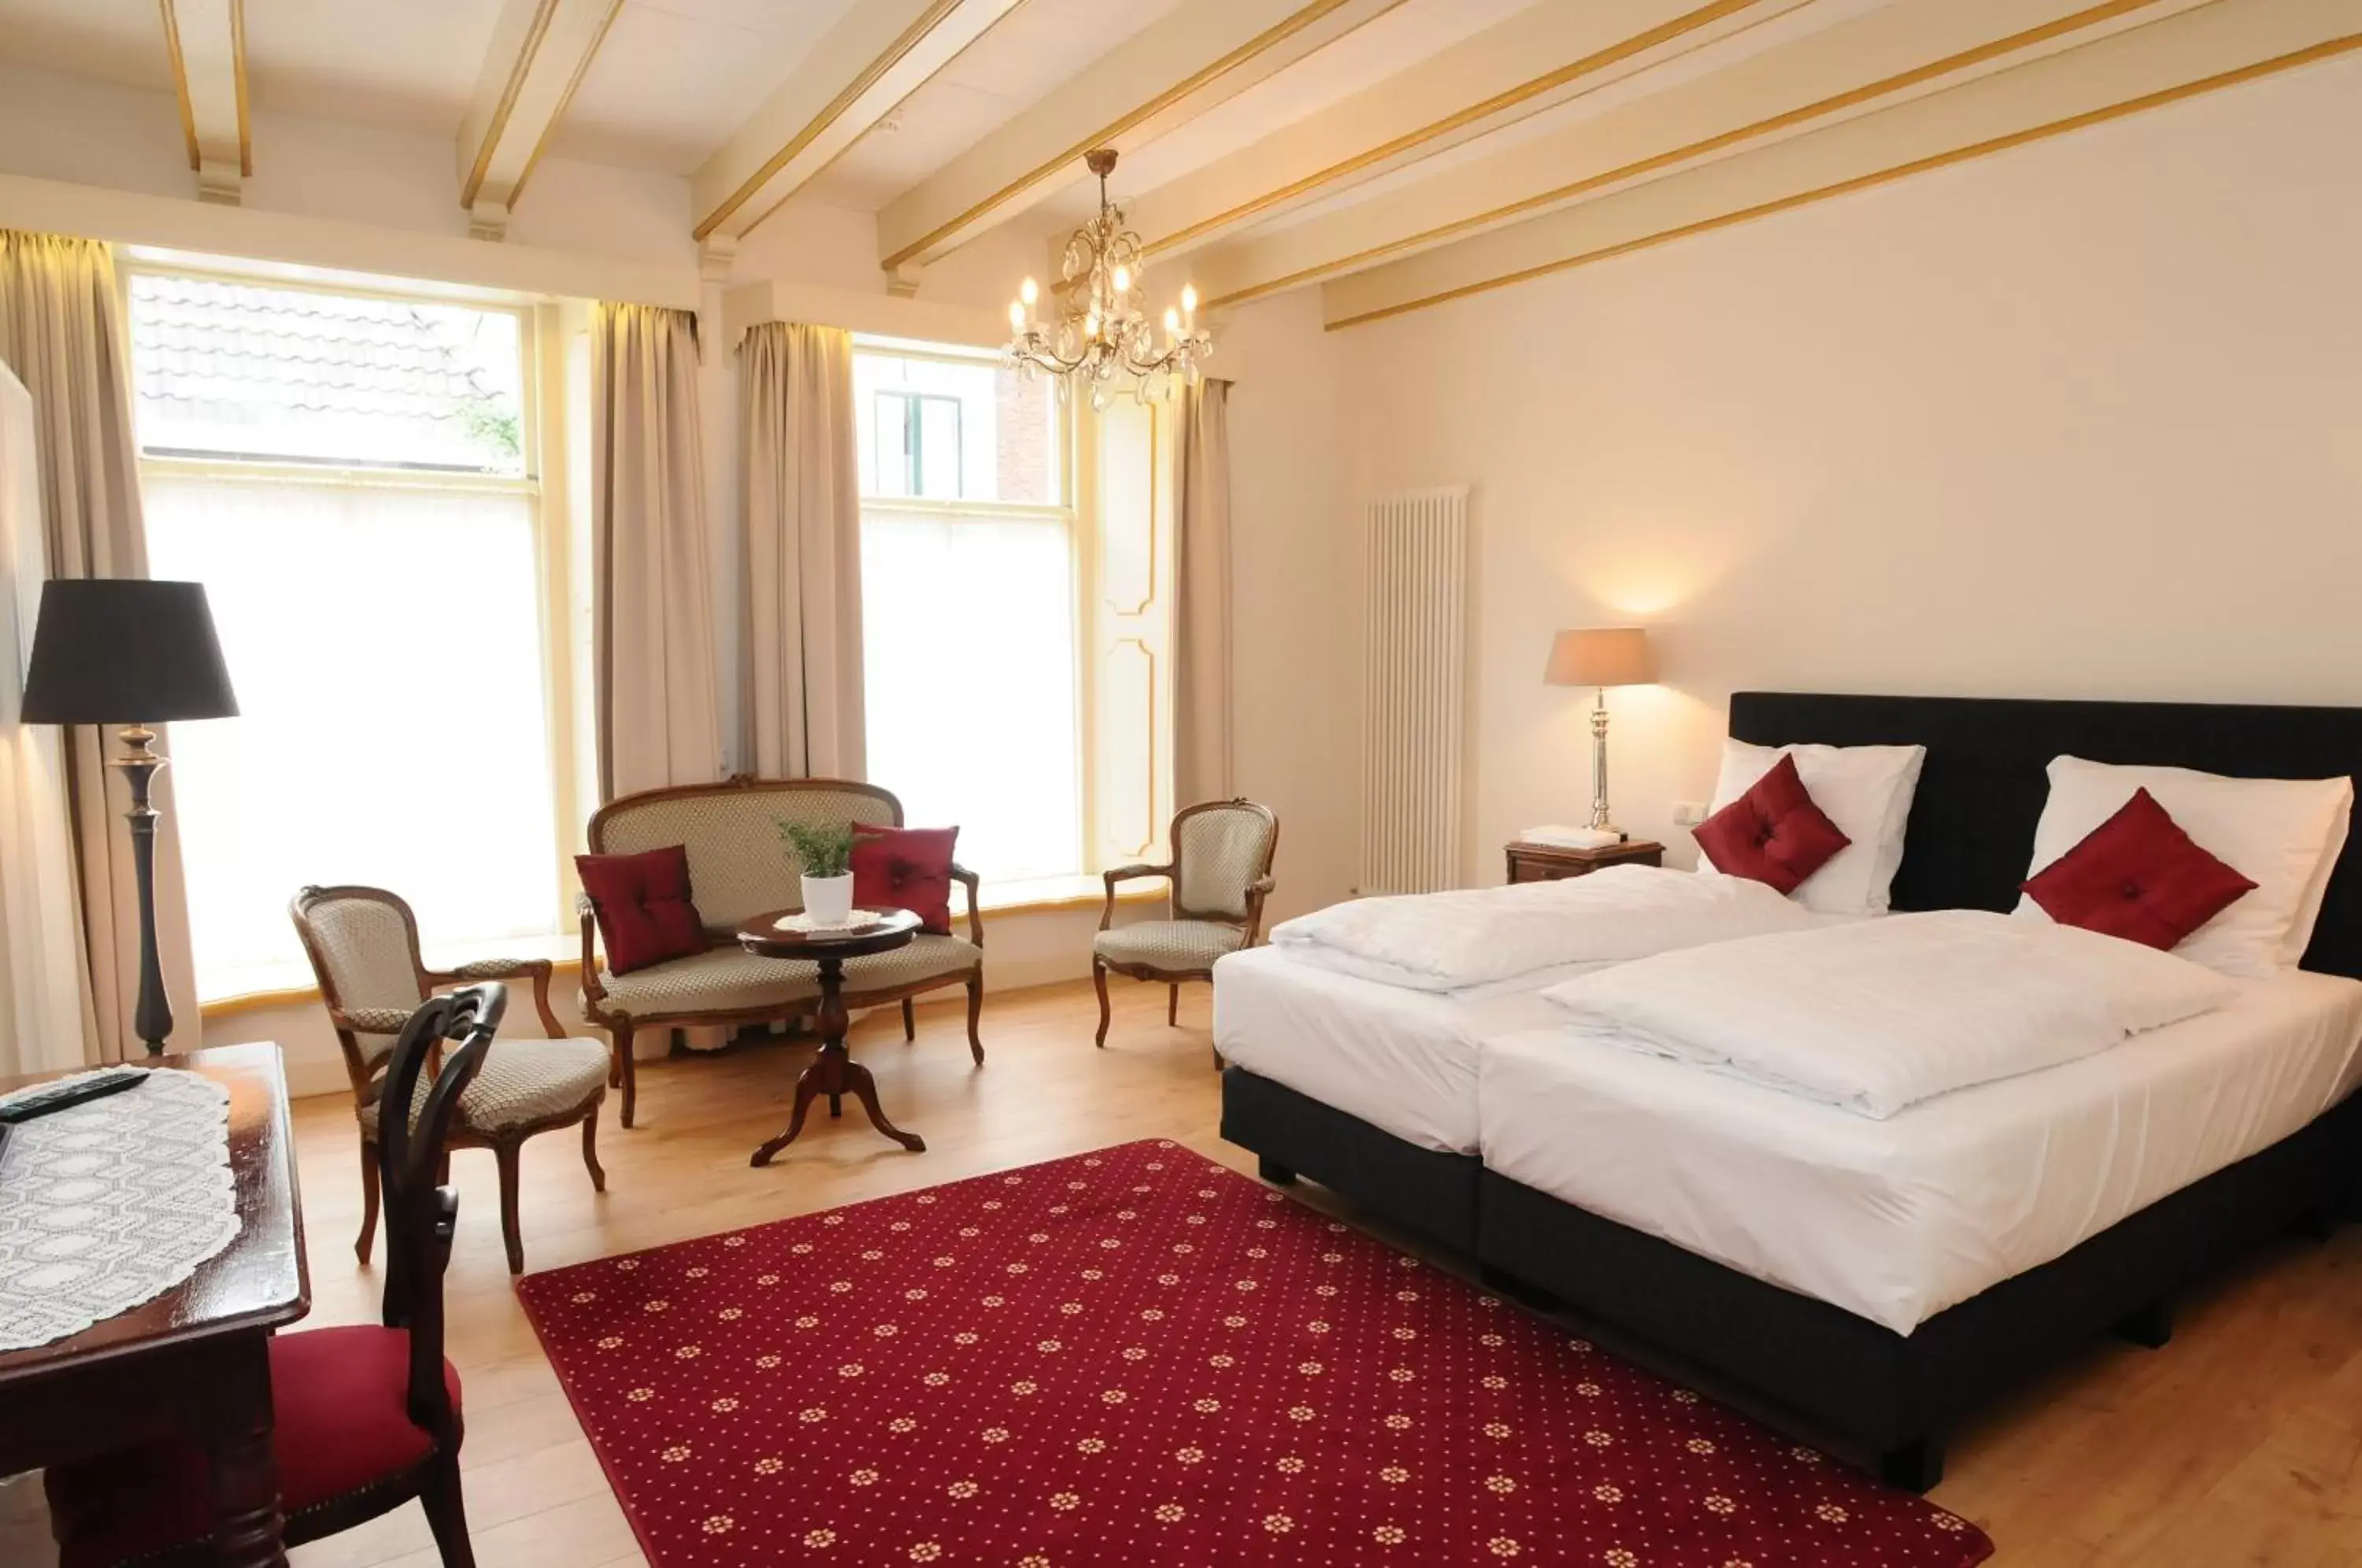 Property building, Room Photo in Hotel De Gulden Waagen